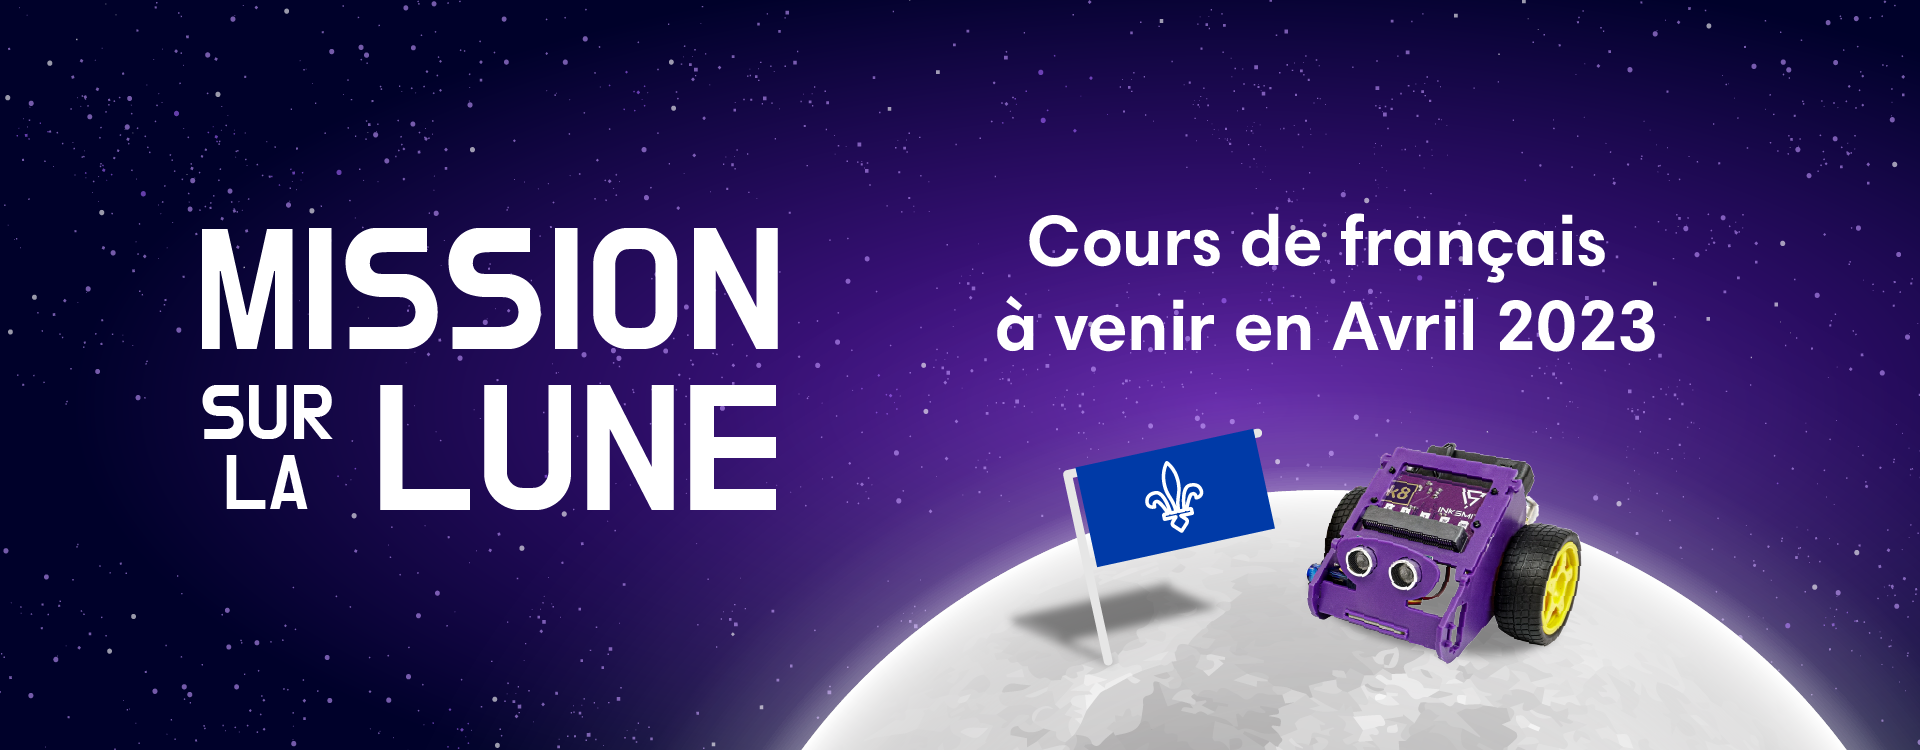 Mission sur la Lune - Cours de français  à venir en Avril 2023